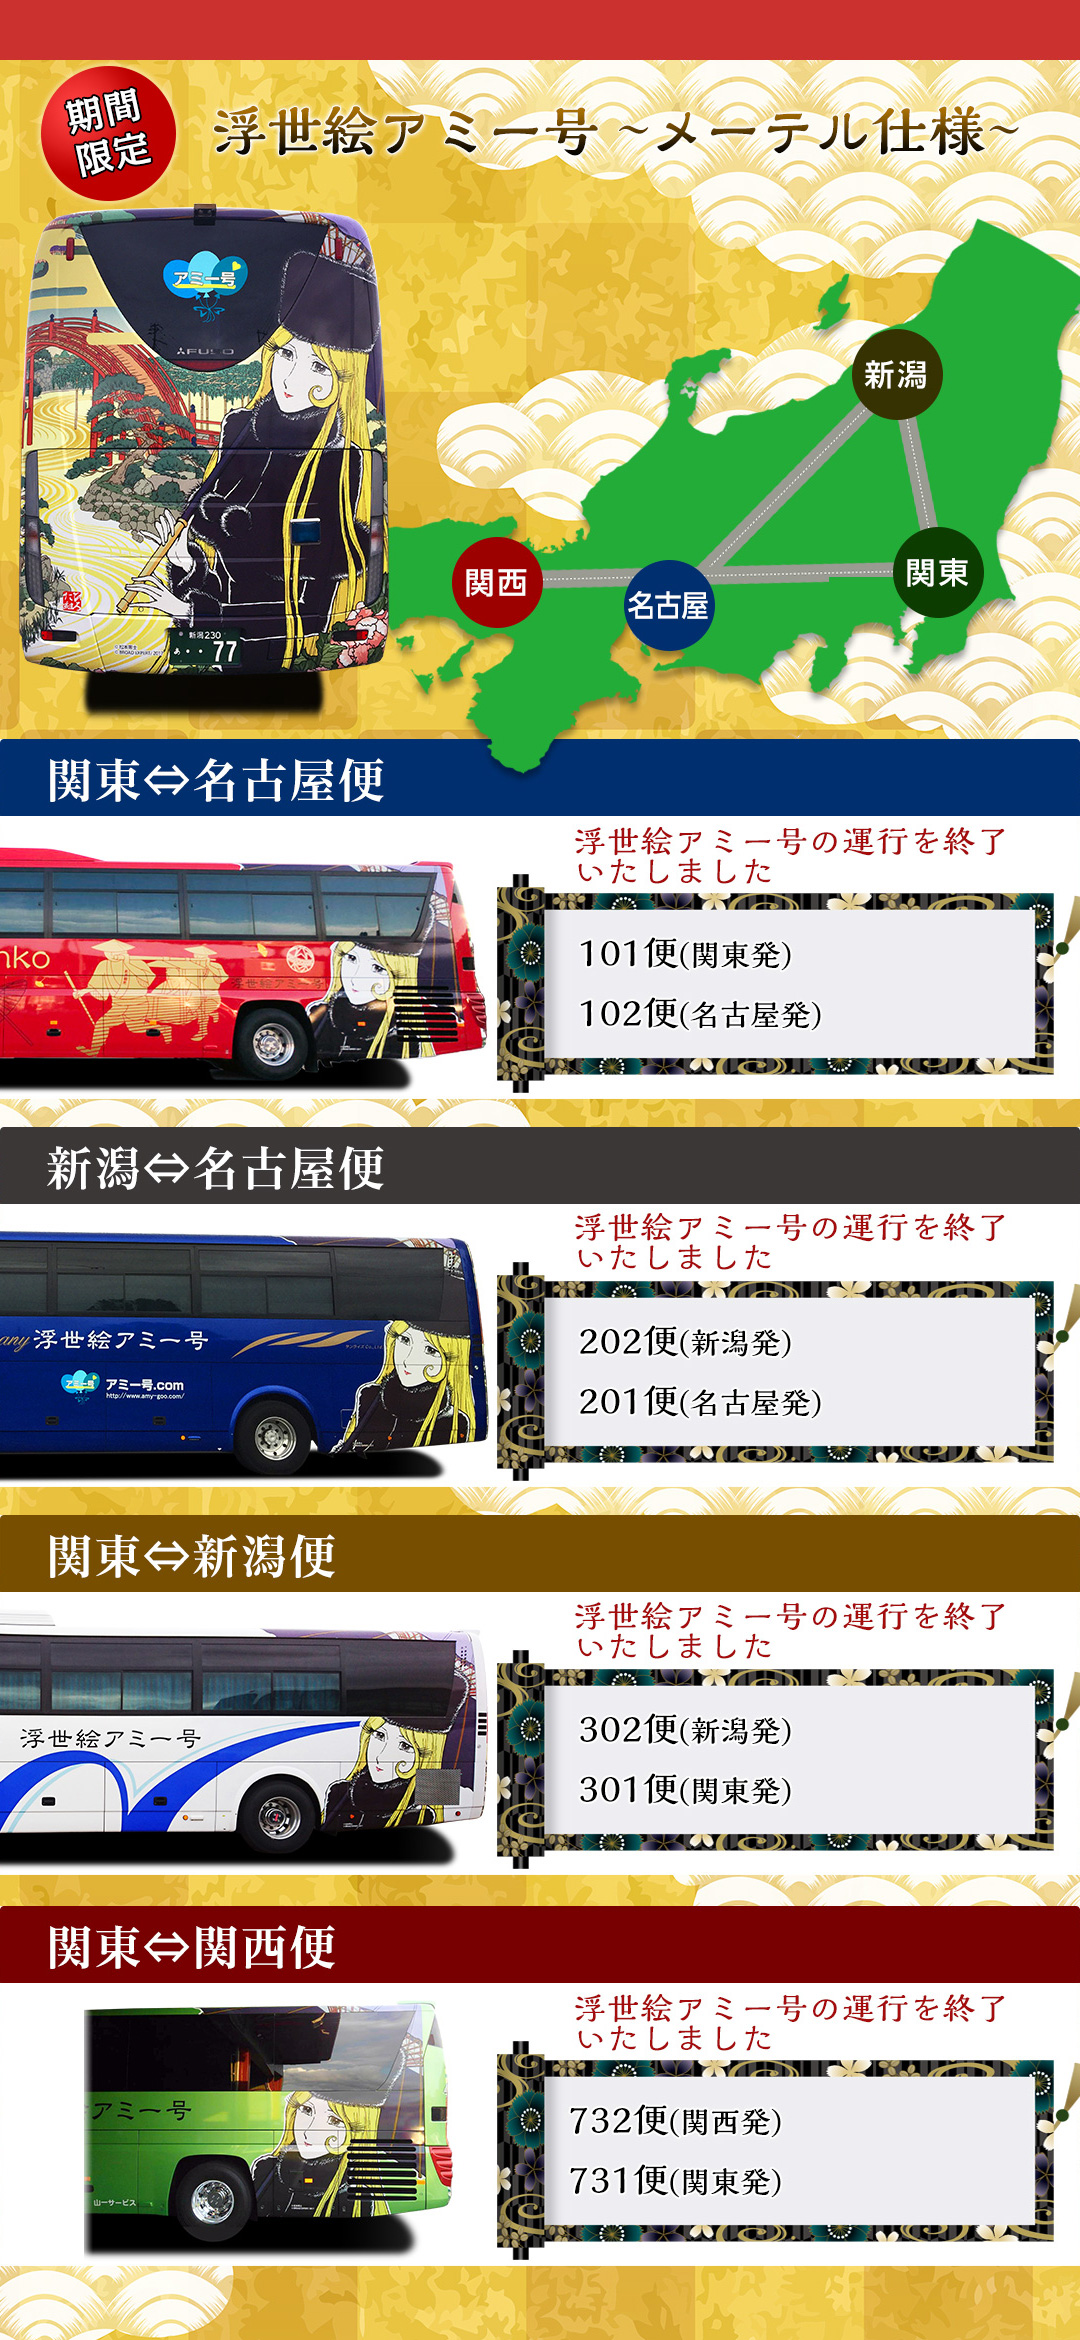 浮世絵アミー号 松本零士浮世絵コレクション メーテル古都の休日 アミー号オリジナルバージョンのラッピングバス